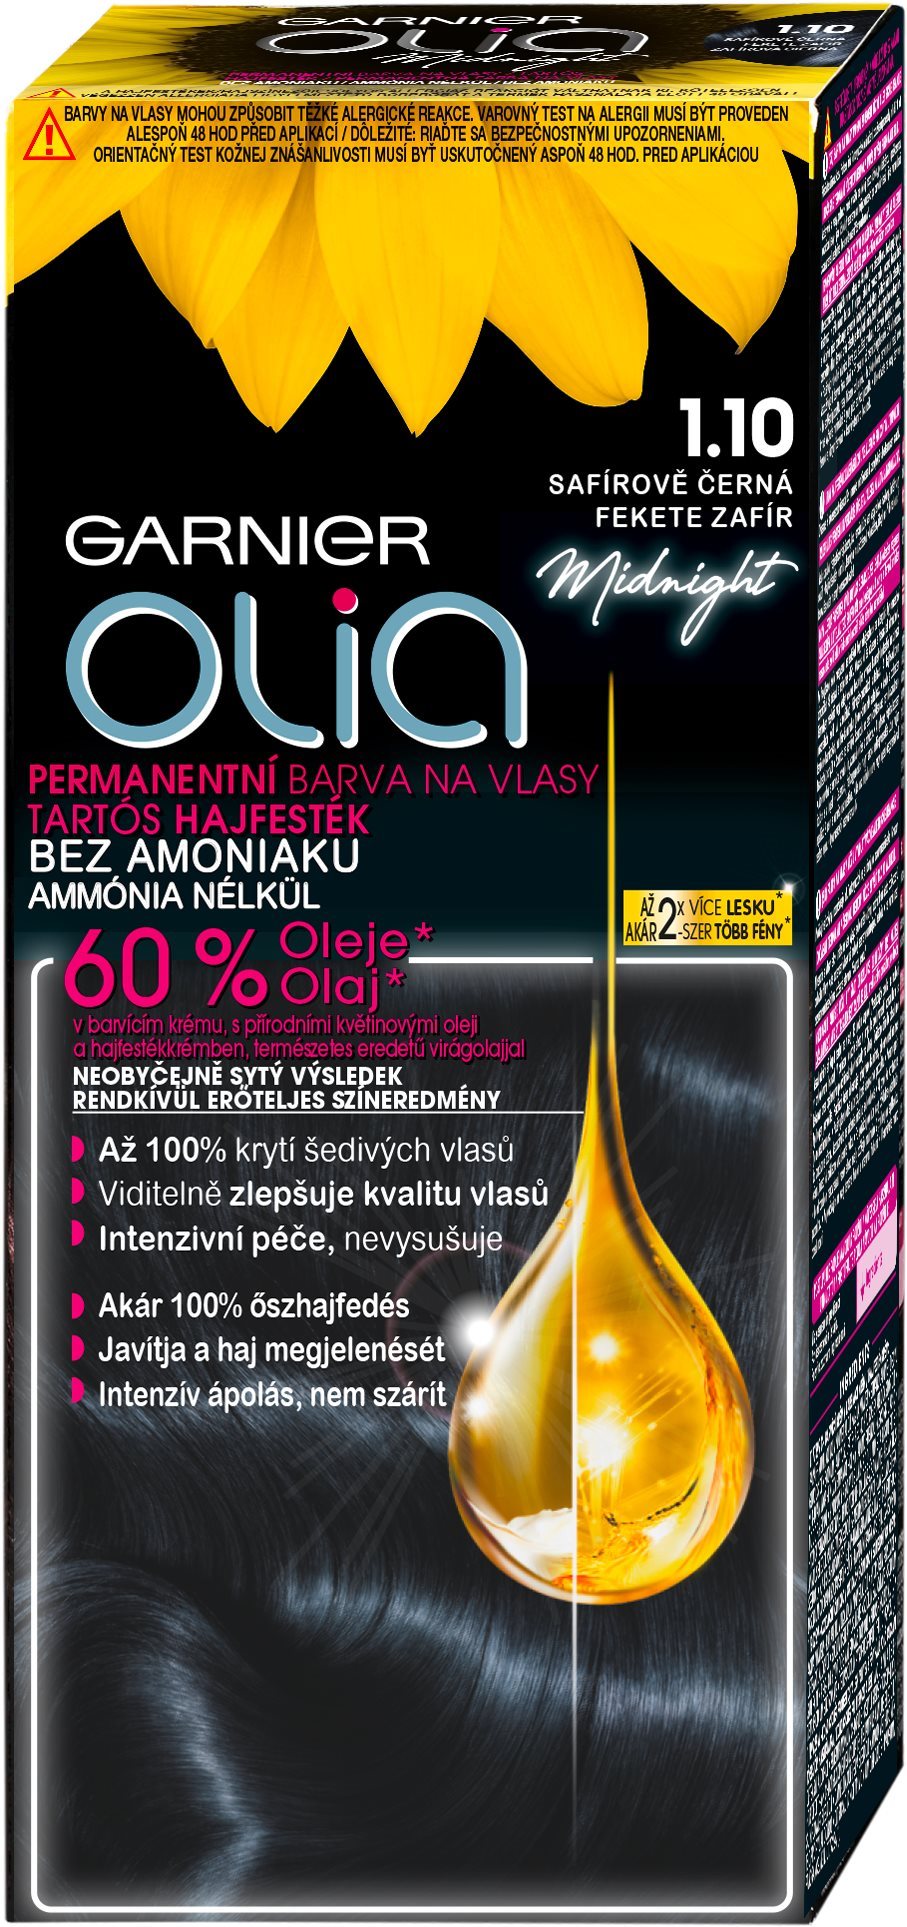 GARNIER Olia 1.10 Fekete Zafír 50 ml